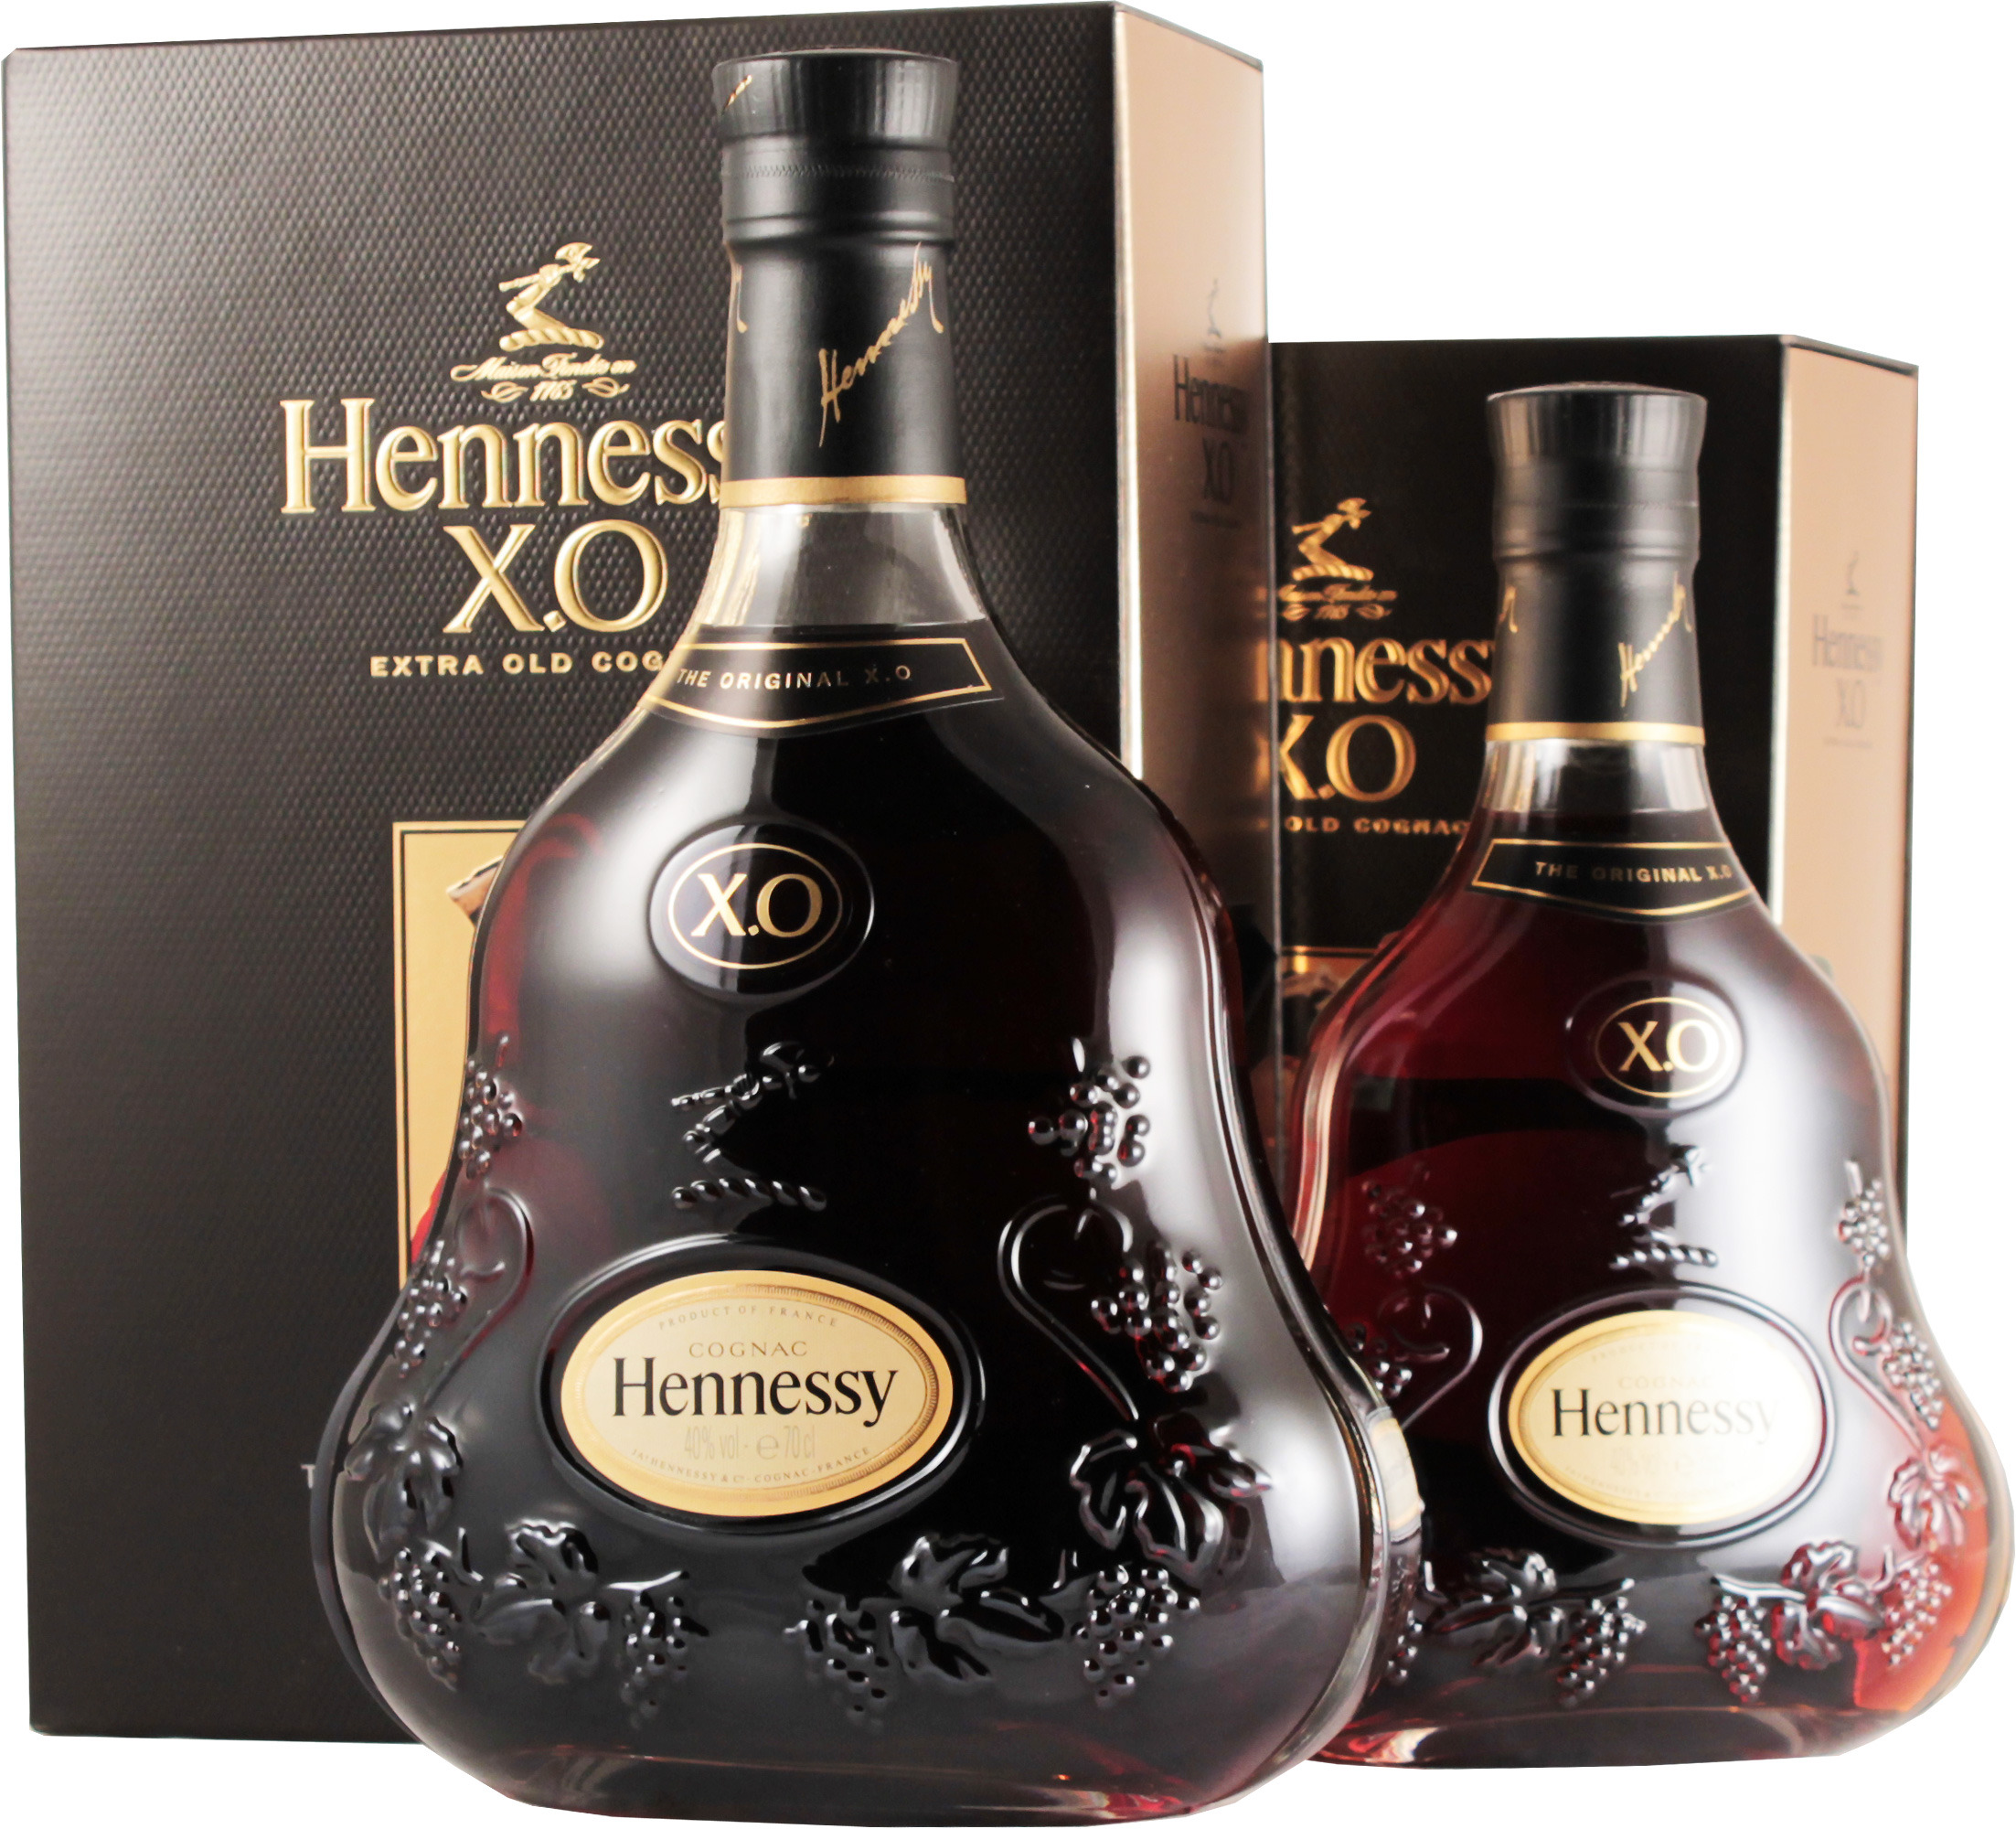 Коньяк хеннесси купить в москве. Французский коньяк Хеннесси. Коньяк Хеннесси Хо. Коньяк Hennessy XO 0.5 Cognac. Cognac x.o Hennessy коньяк.